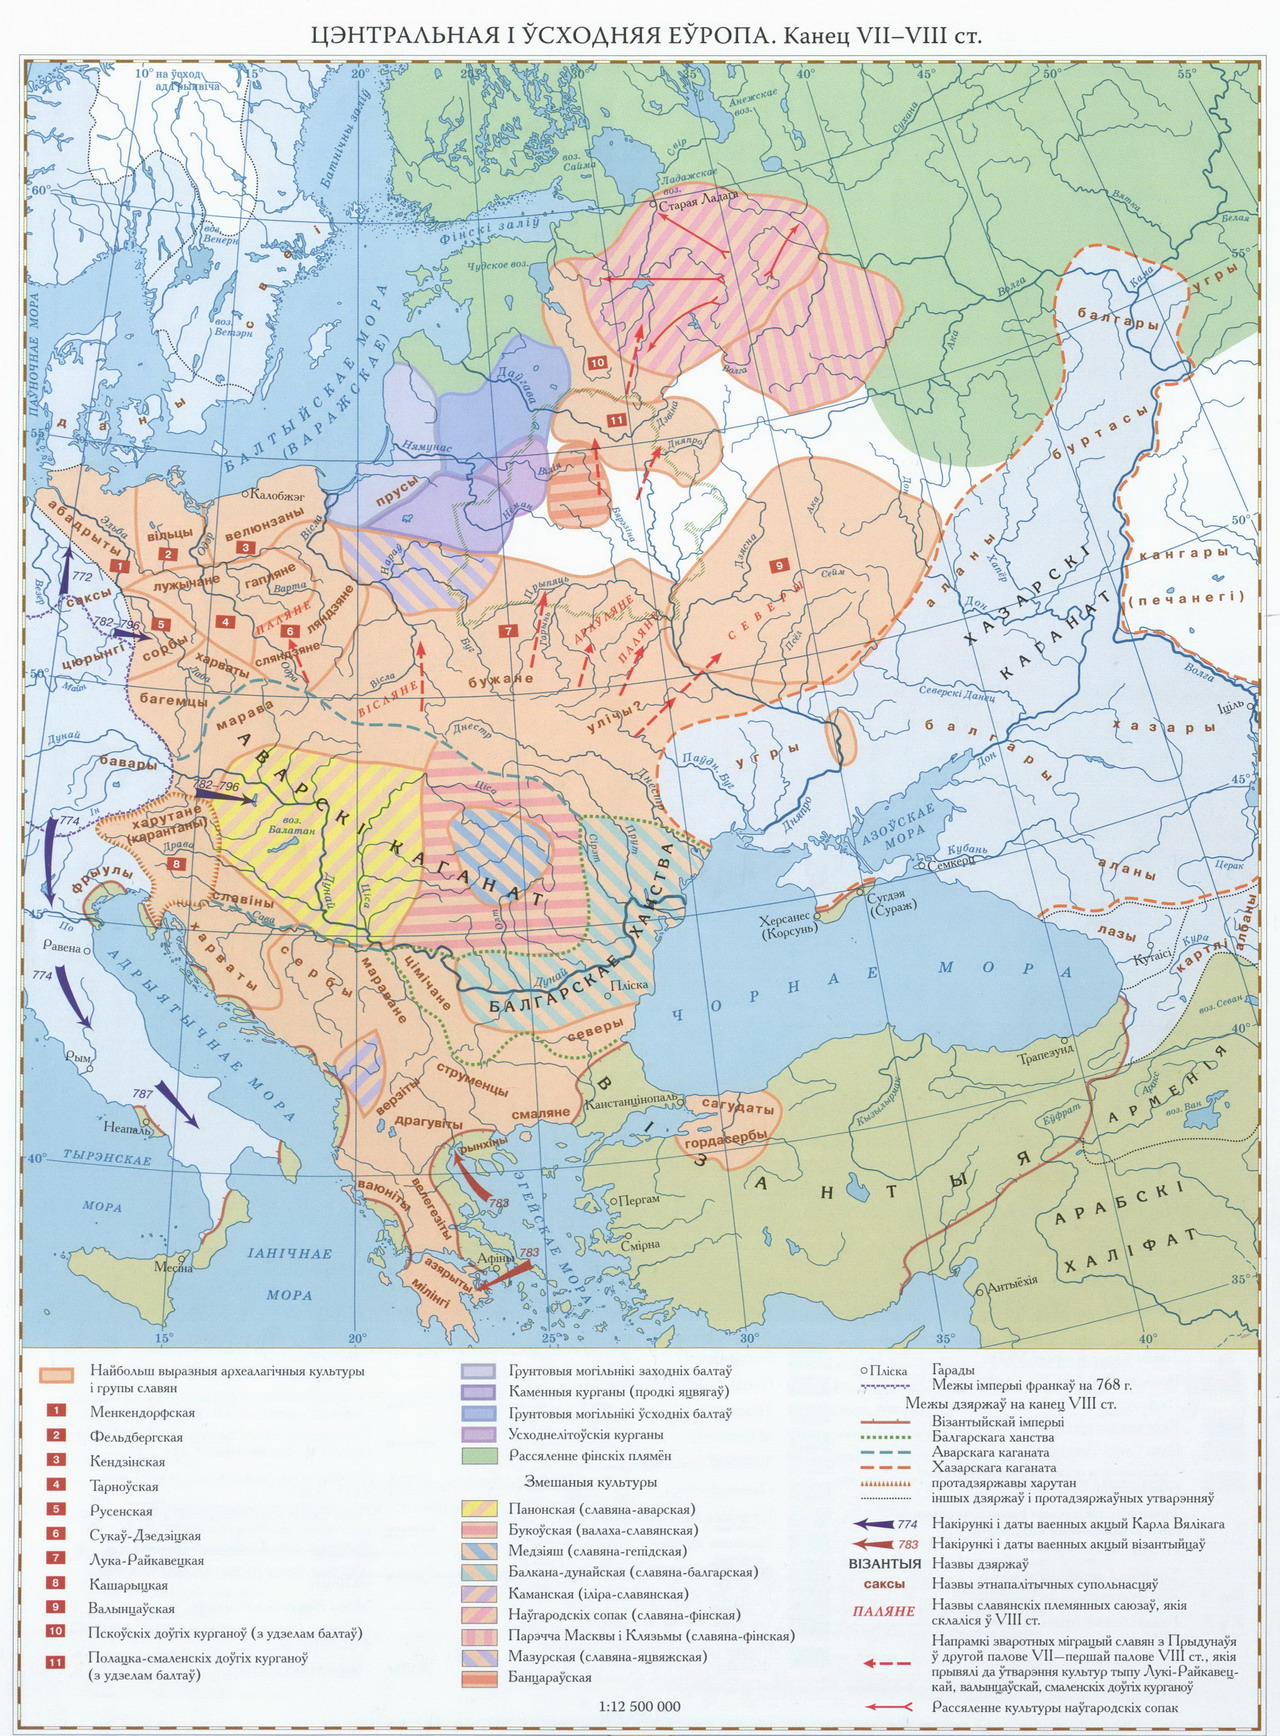 Центральная и Восточная Европа конца 7 - 8 века по В. Носевичу